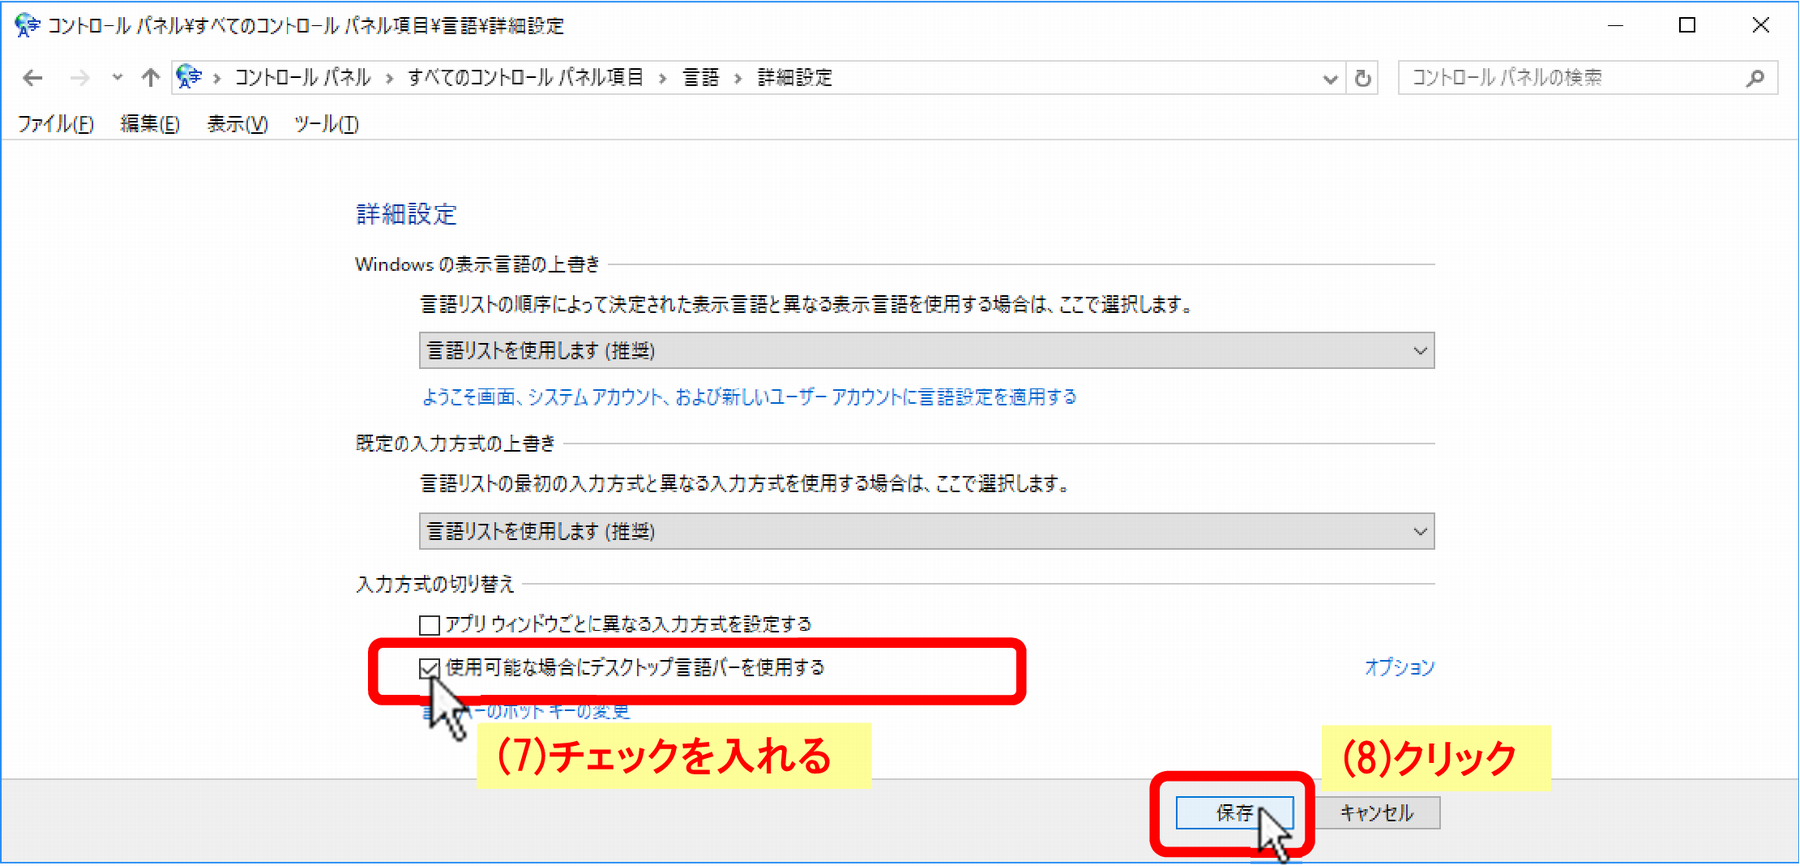 (7)「□使用可能な場合にデスクトップ言語バーを使用する」にチェックを入れ、(8)［保存］をクリック